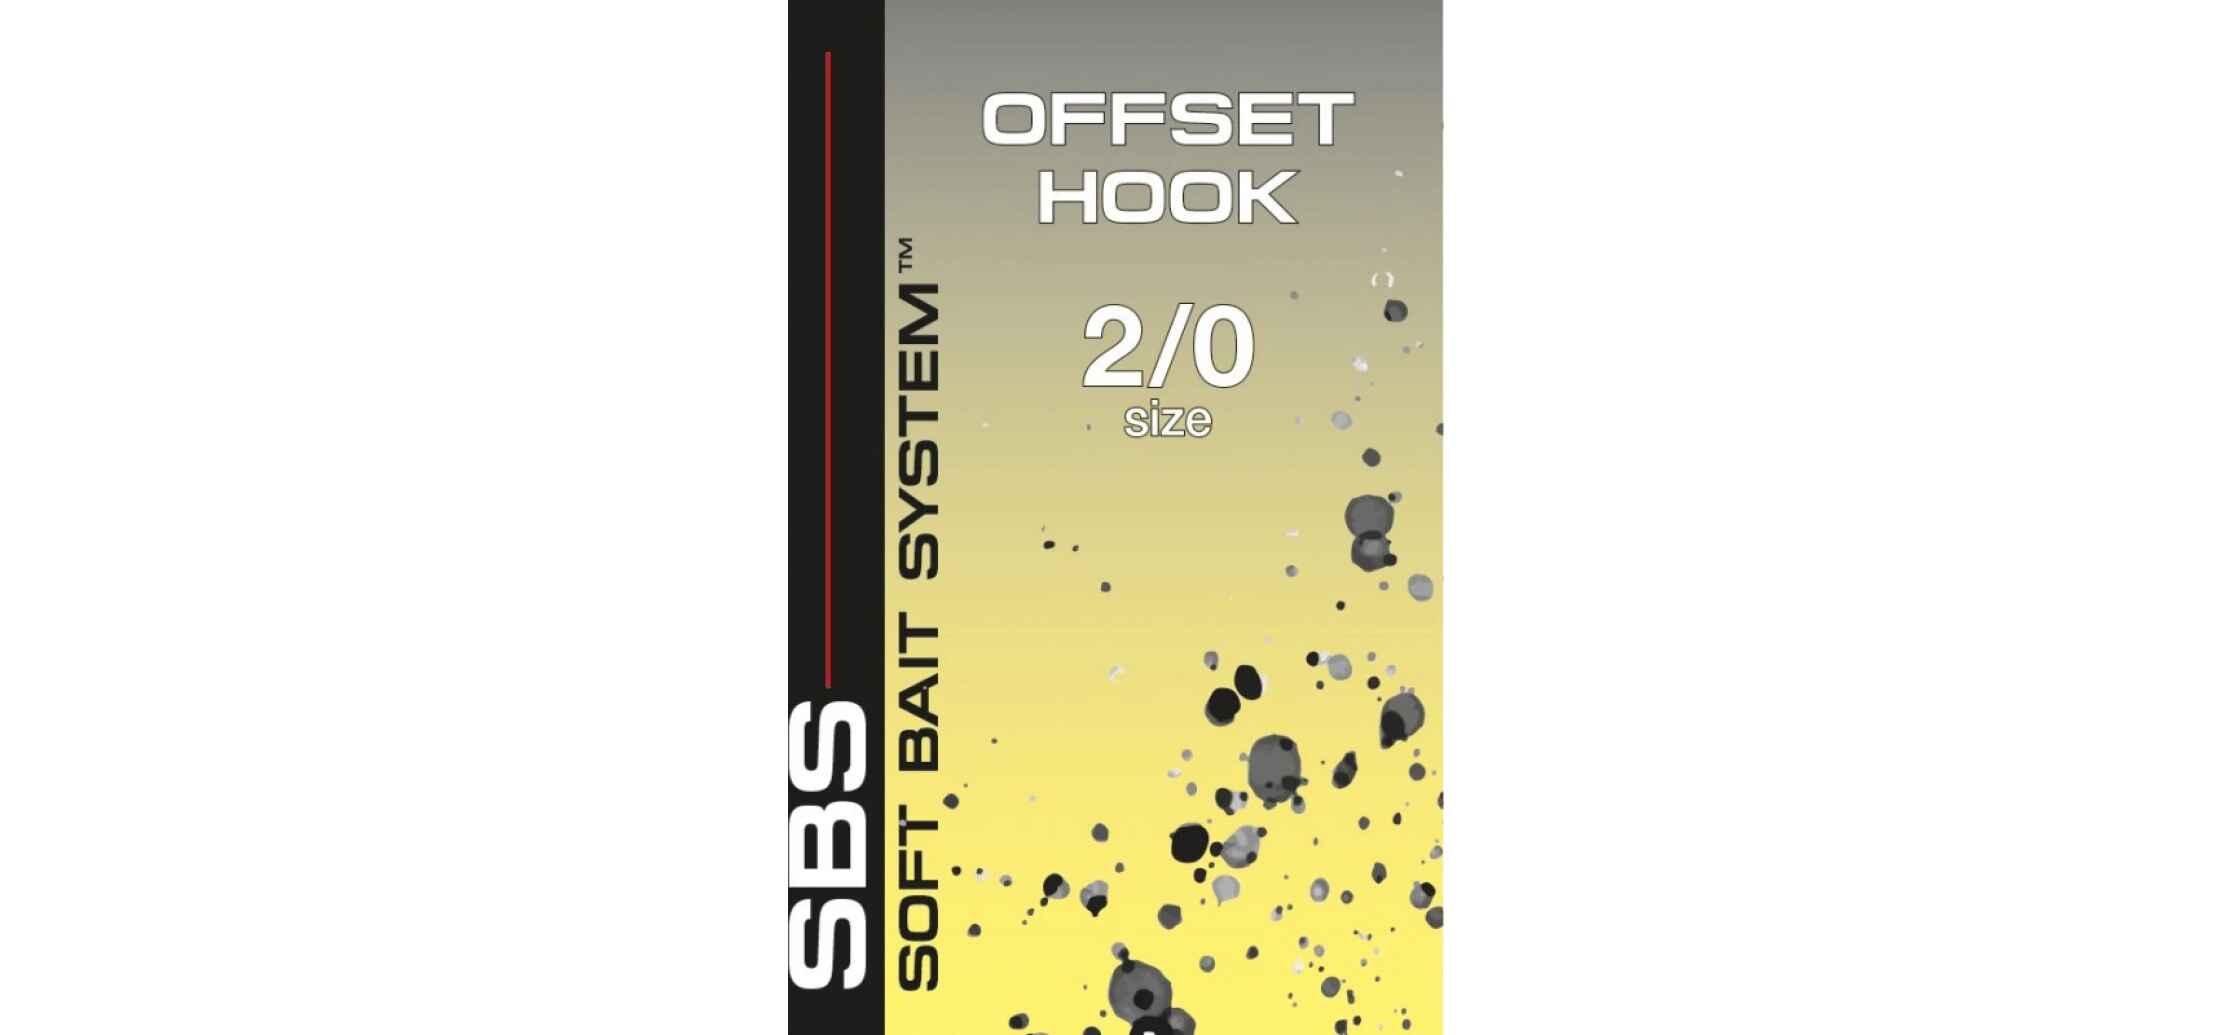 Offset Hook-2/0